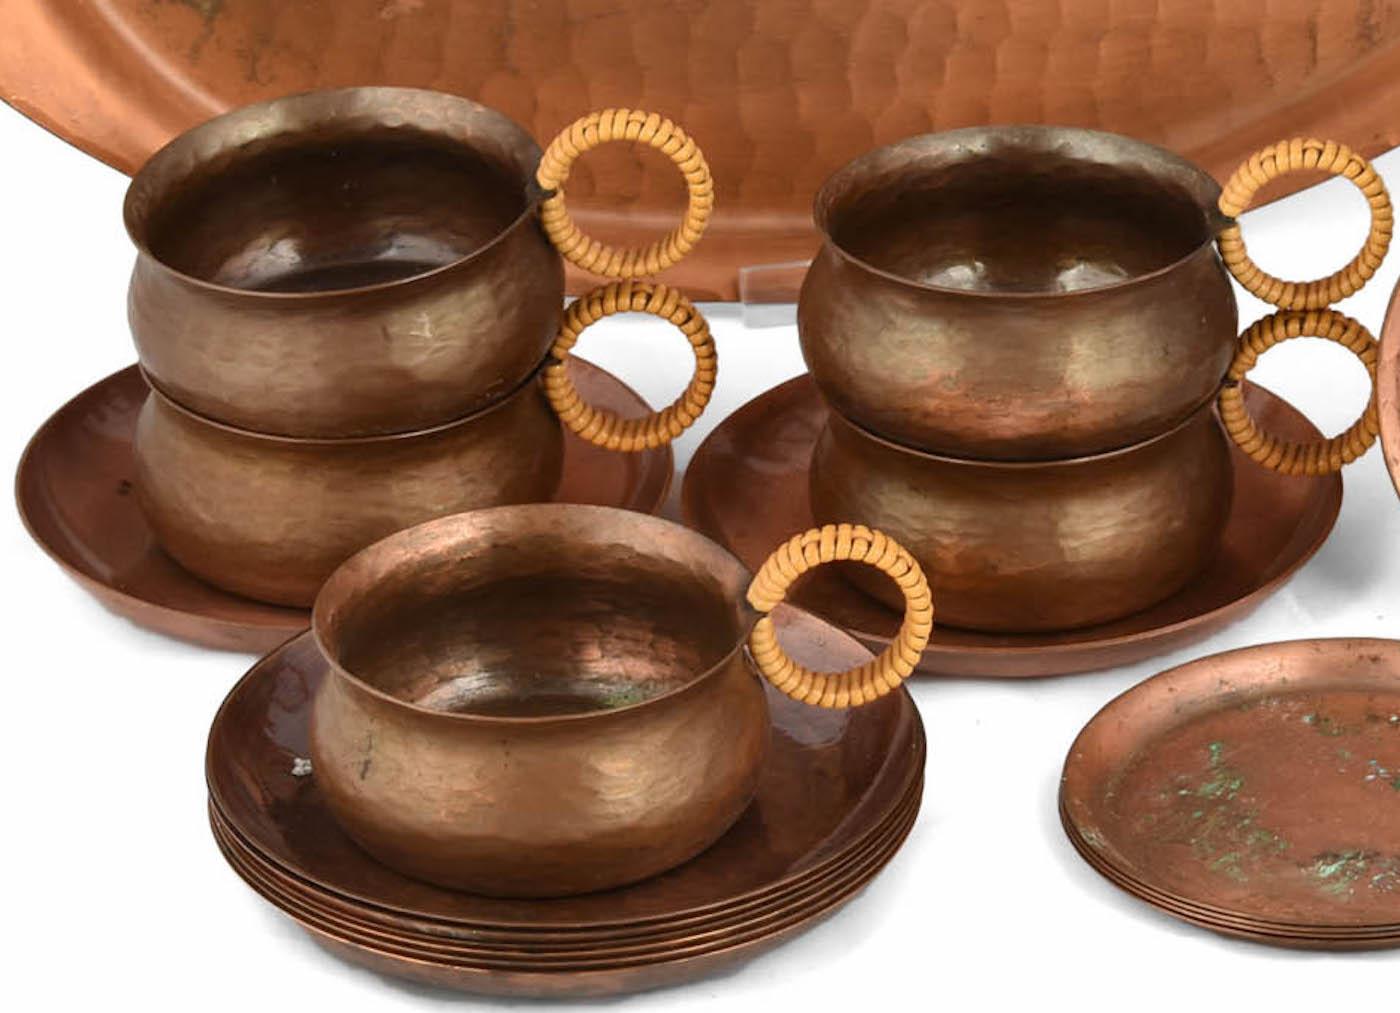 Le service à thé en cuivre est un objet décoratif original réalisé dans les années 1960.

Le lot comprend plusieurs pièces faites à la main : une théière, un plateau ovale, cinq tasses à thé et huit soucoupes. Toutes les pièces sont en